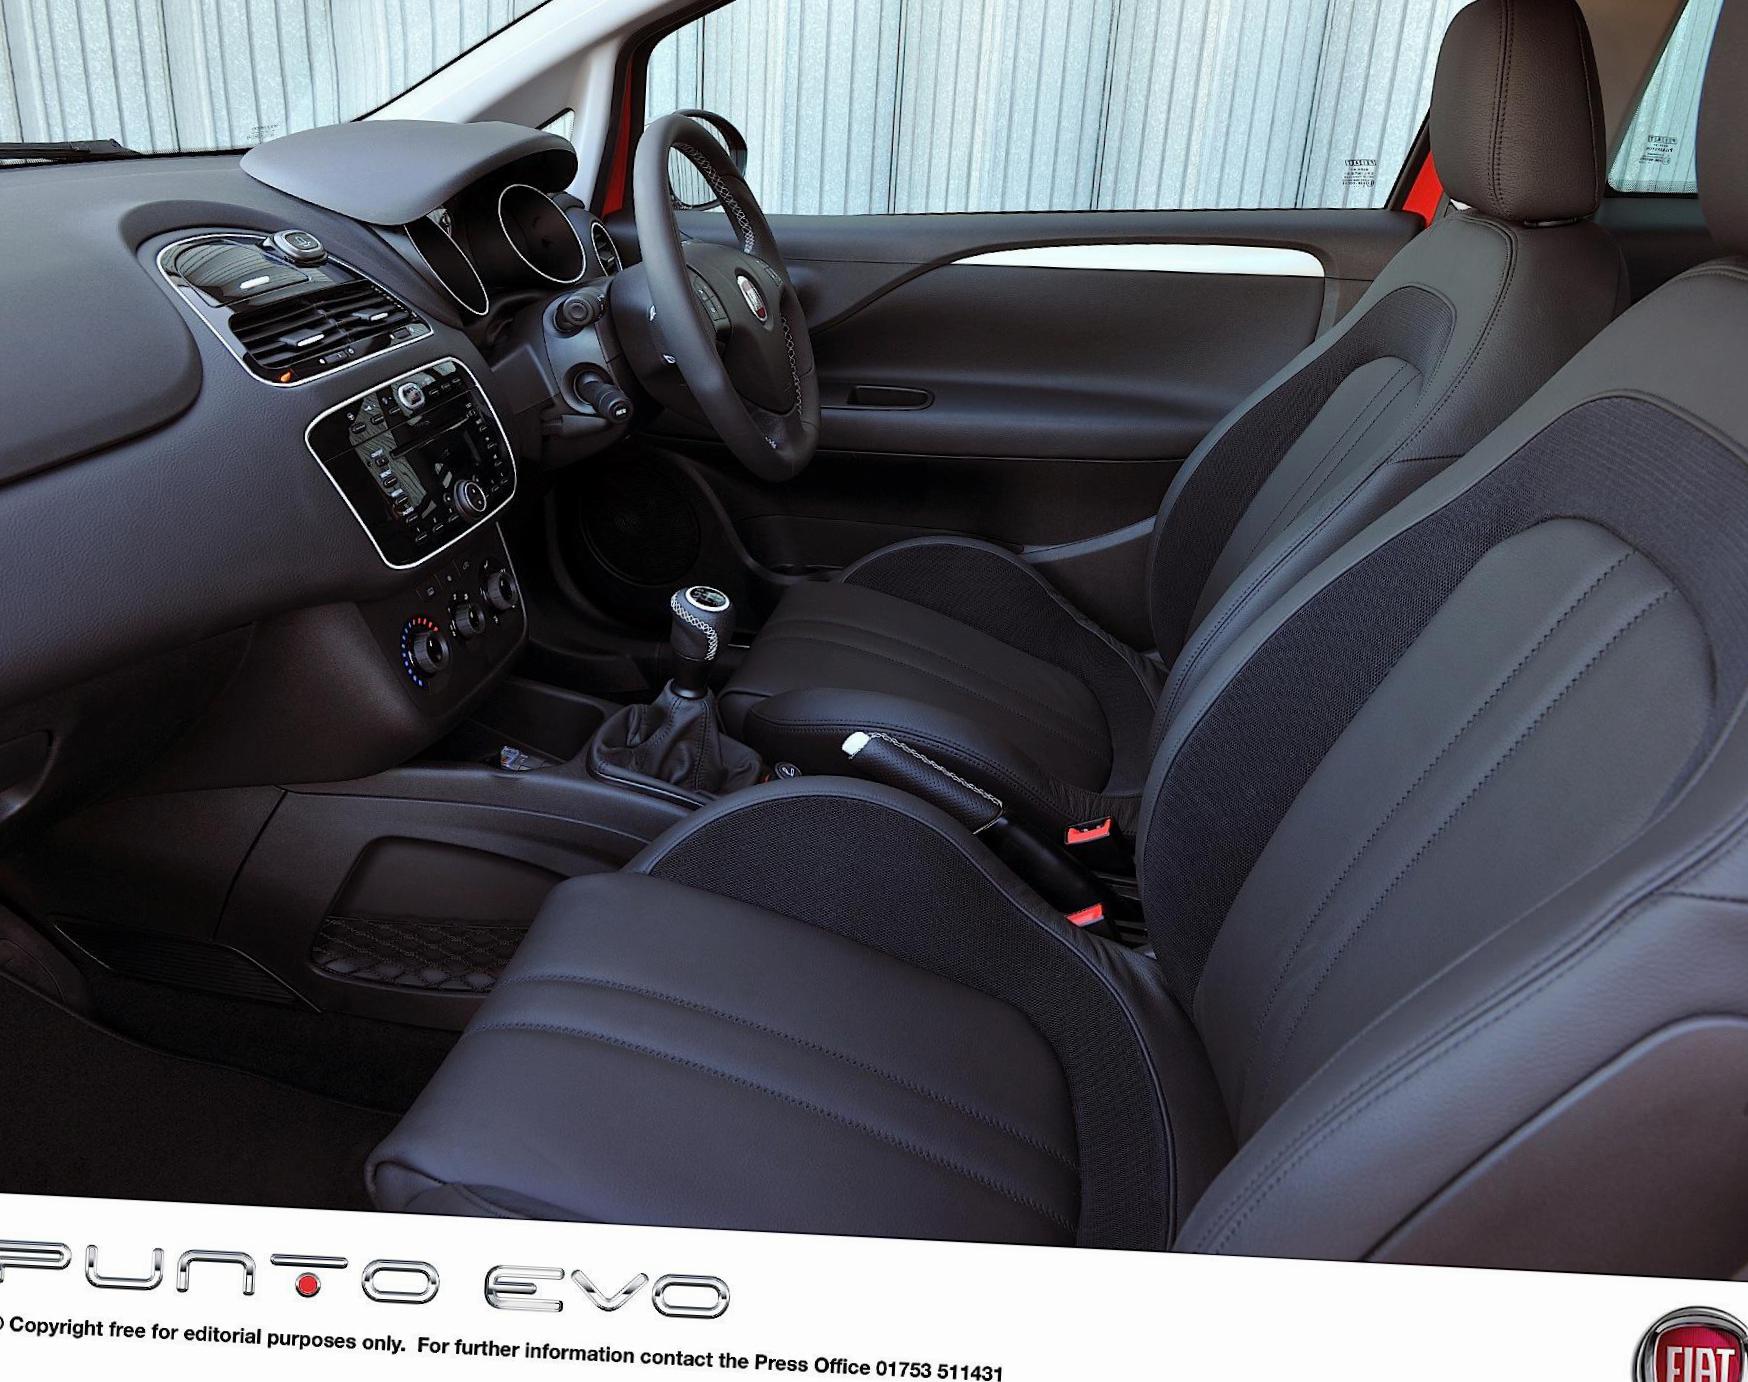 Punto Evo 3 doors Fiat specs hatchback